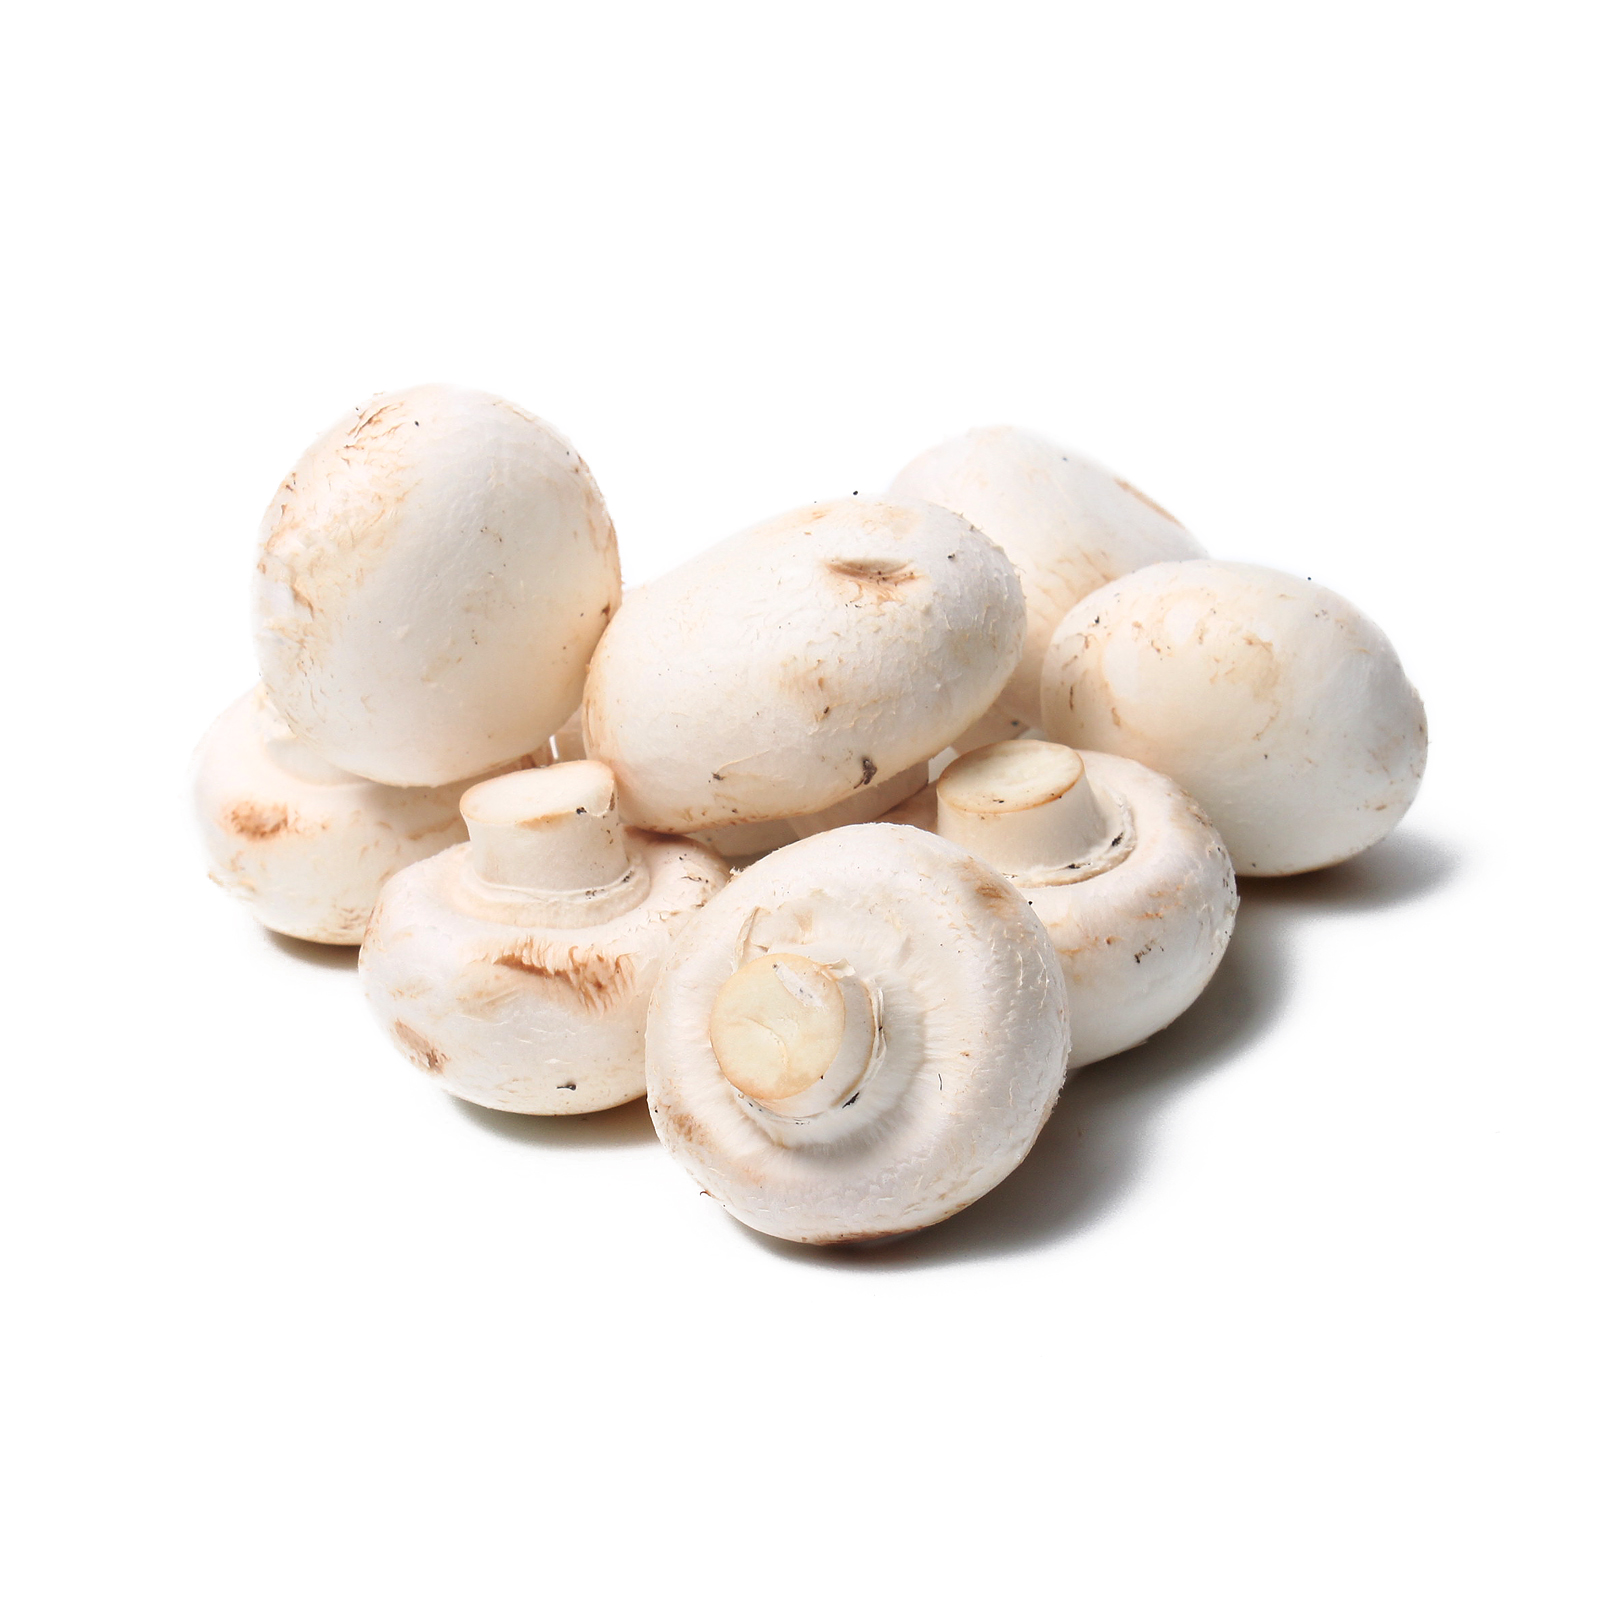 White mushroom photo